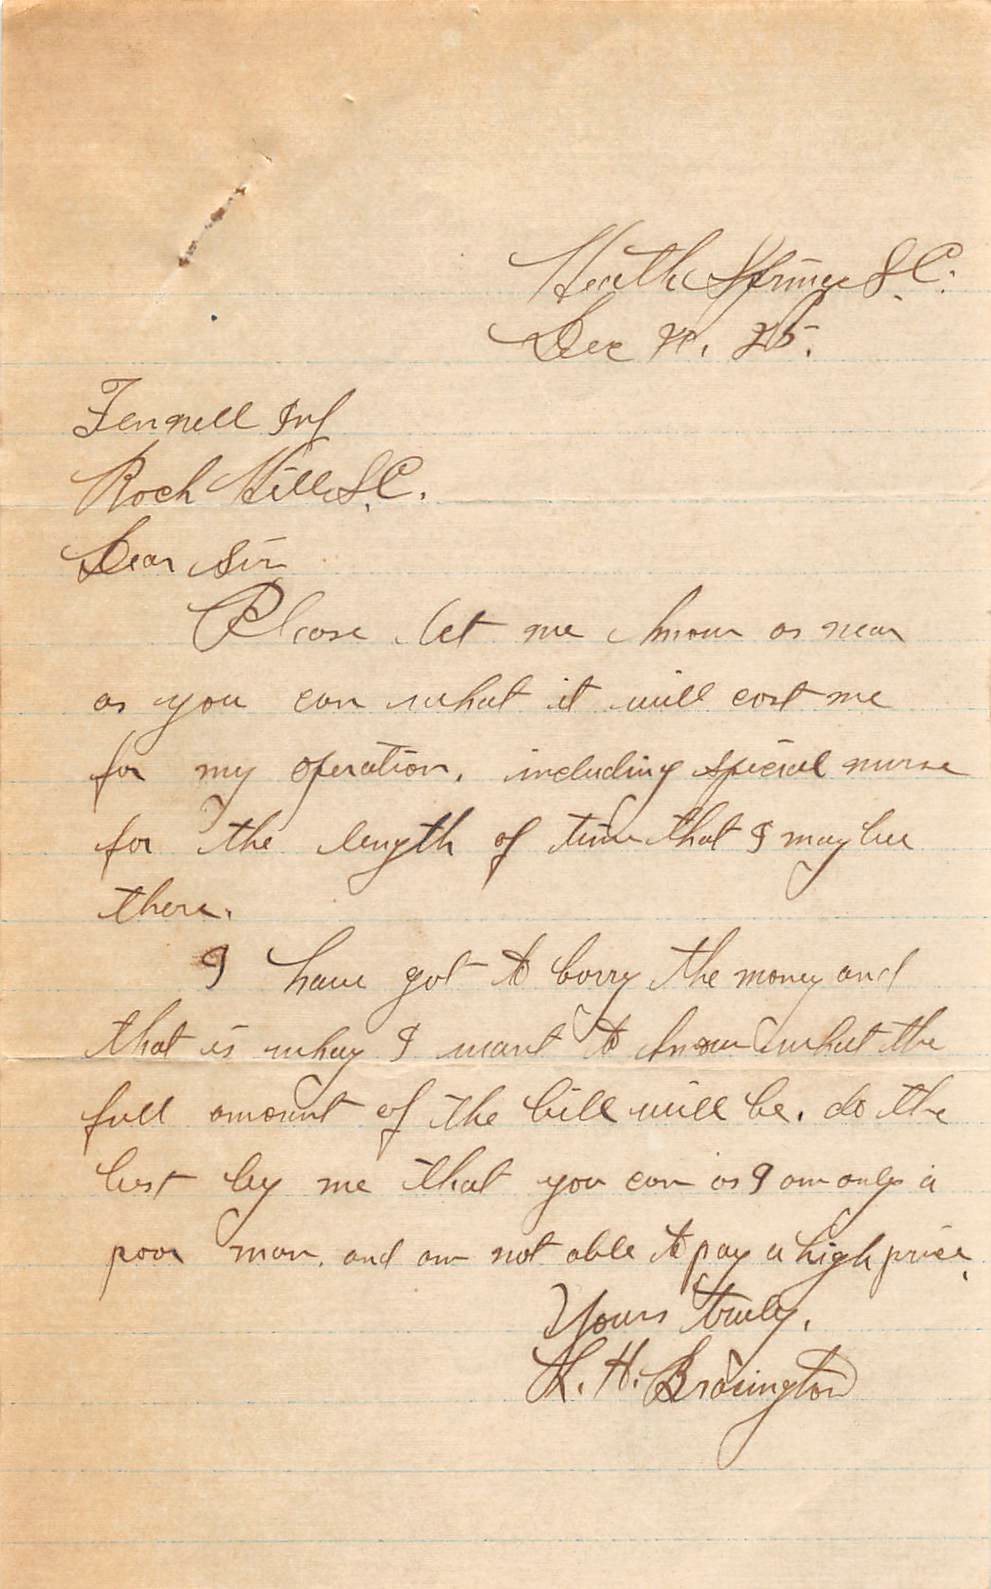 L.H. Brasington's Letter to Dr. W.W. Fennell - 1925